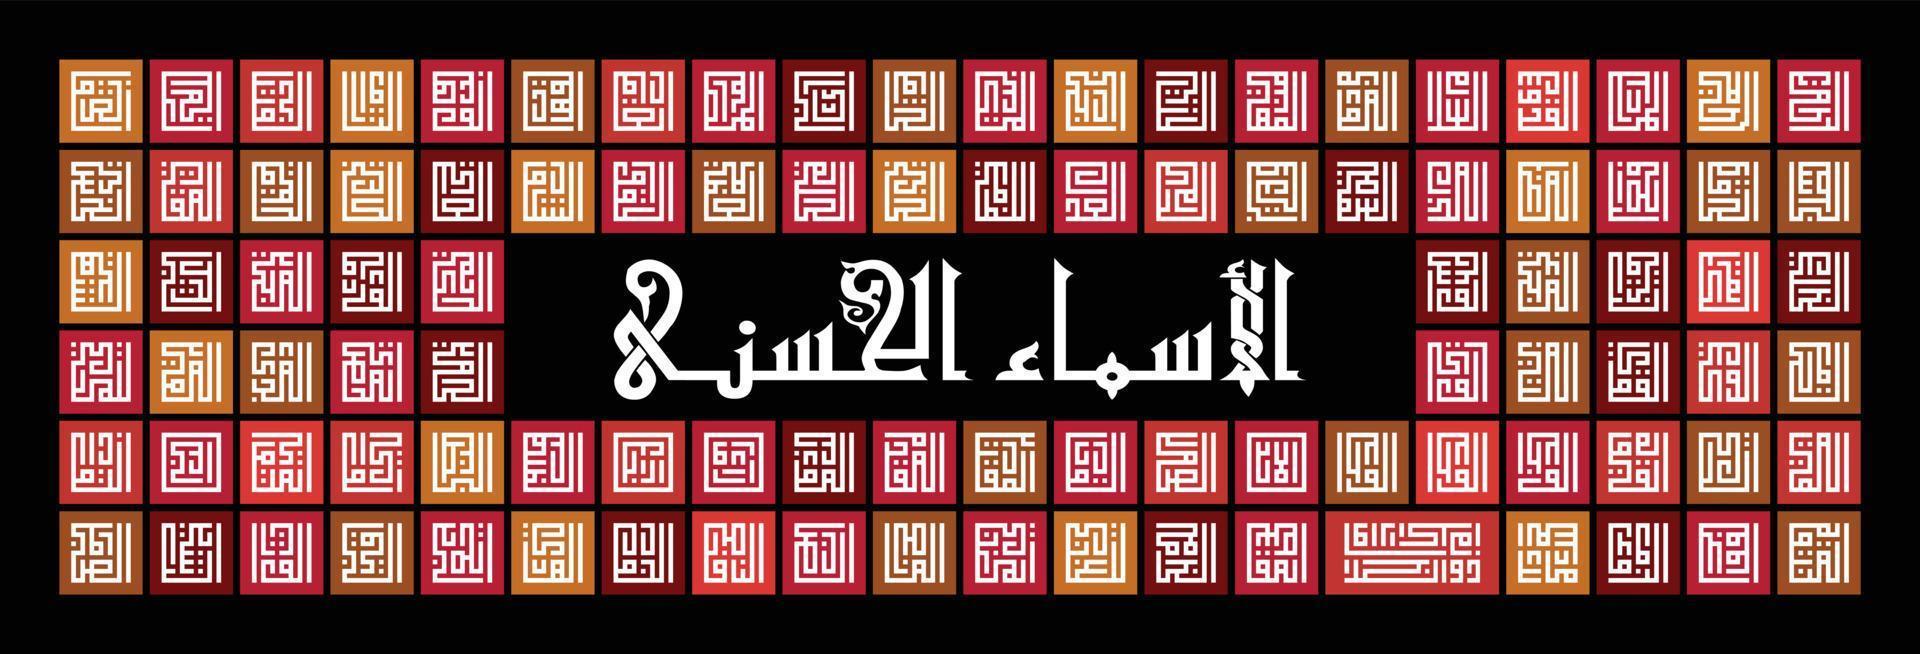 caligrafía árabe 'asmaul husna' '99 nombres de allah' en estilo kufi con patrón cuadrado rojo, naranja y marrón sobre fondo negro. ideal para la decoración de paredes del hogar. vector